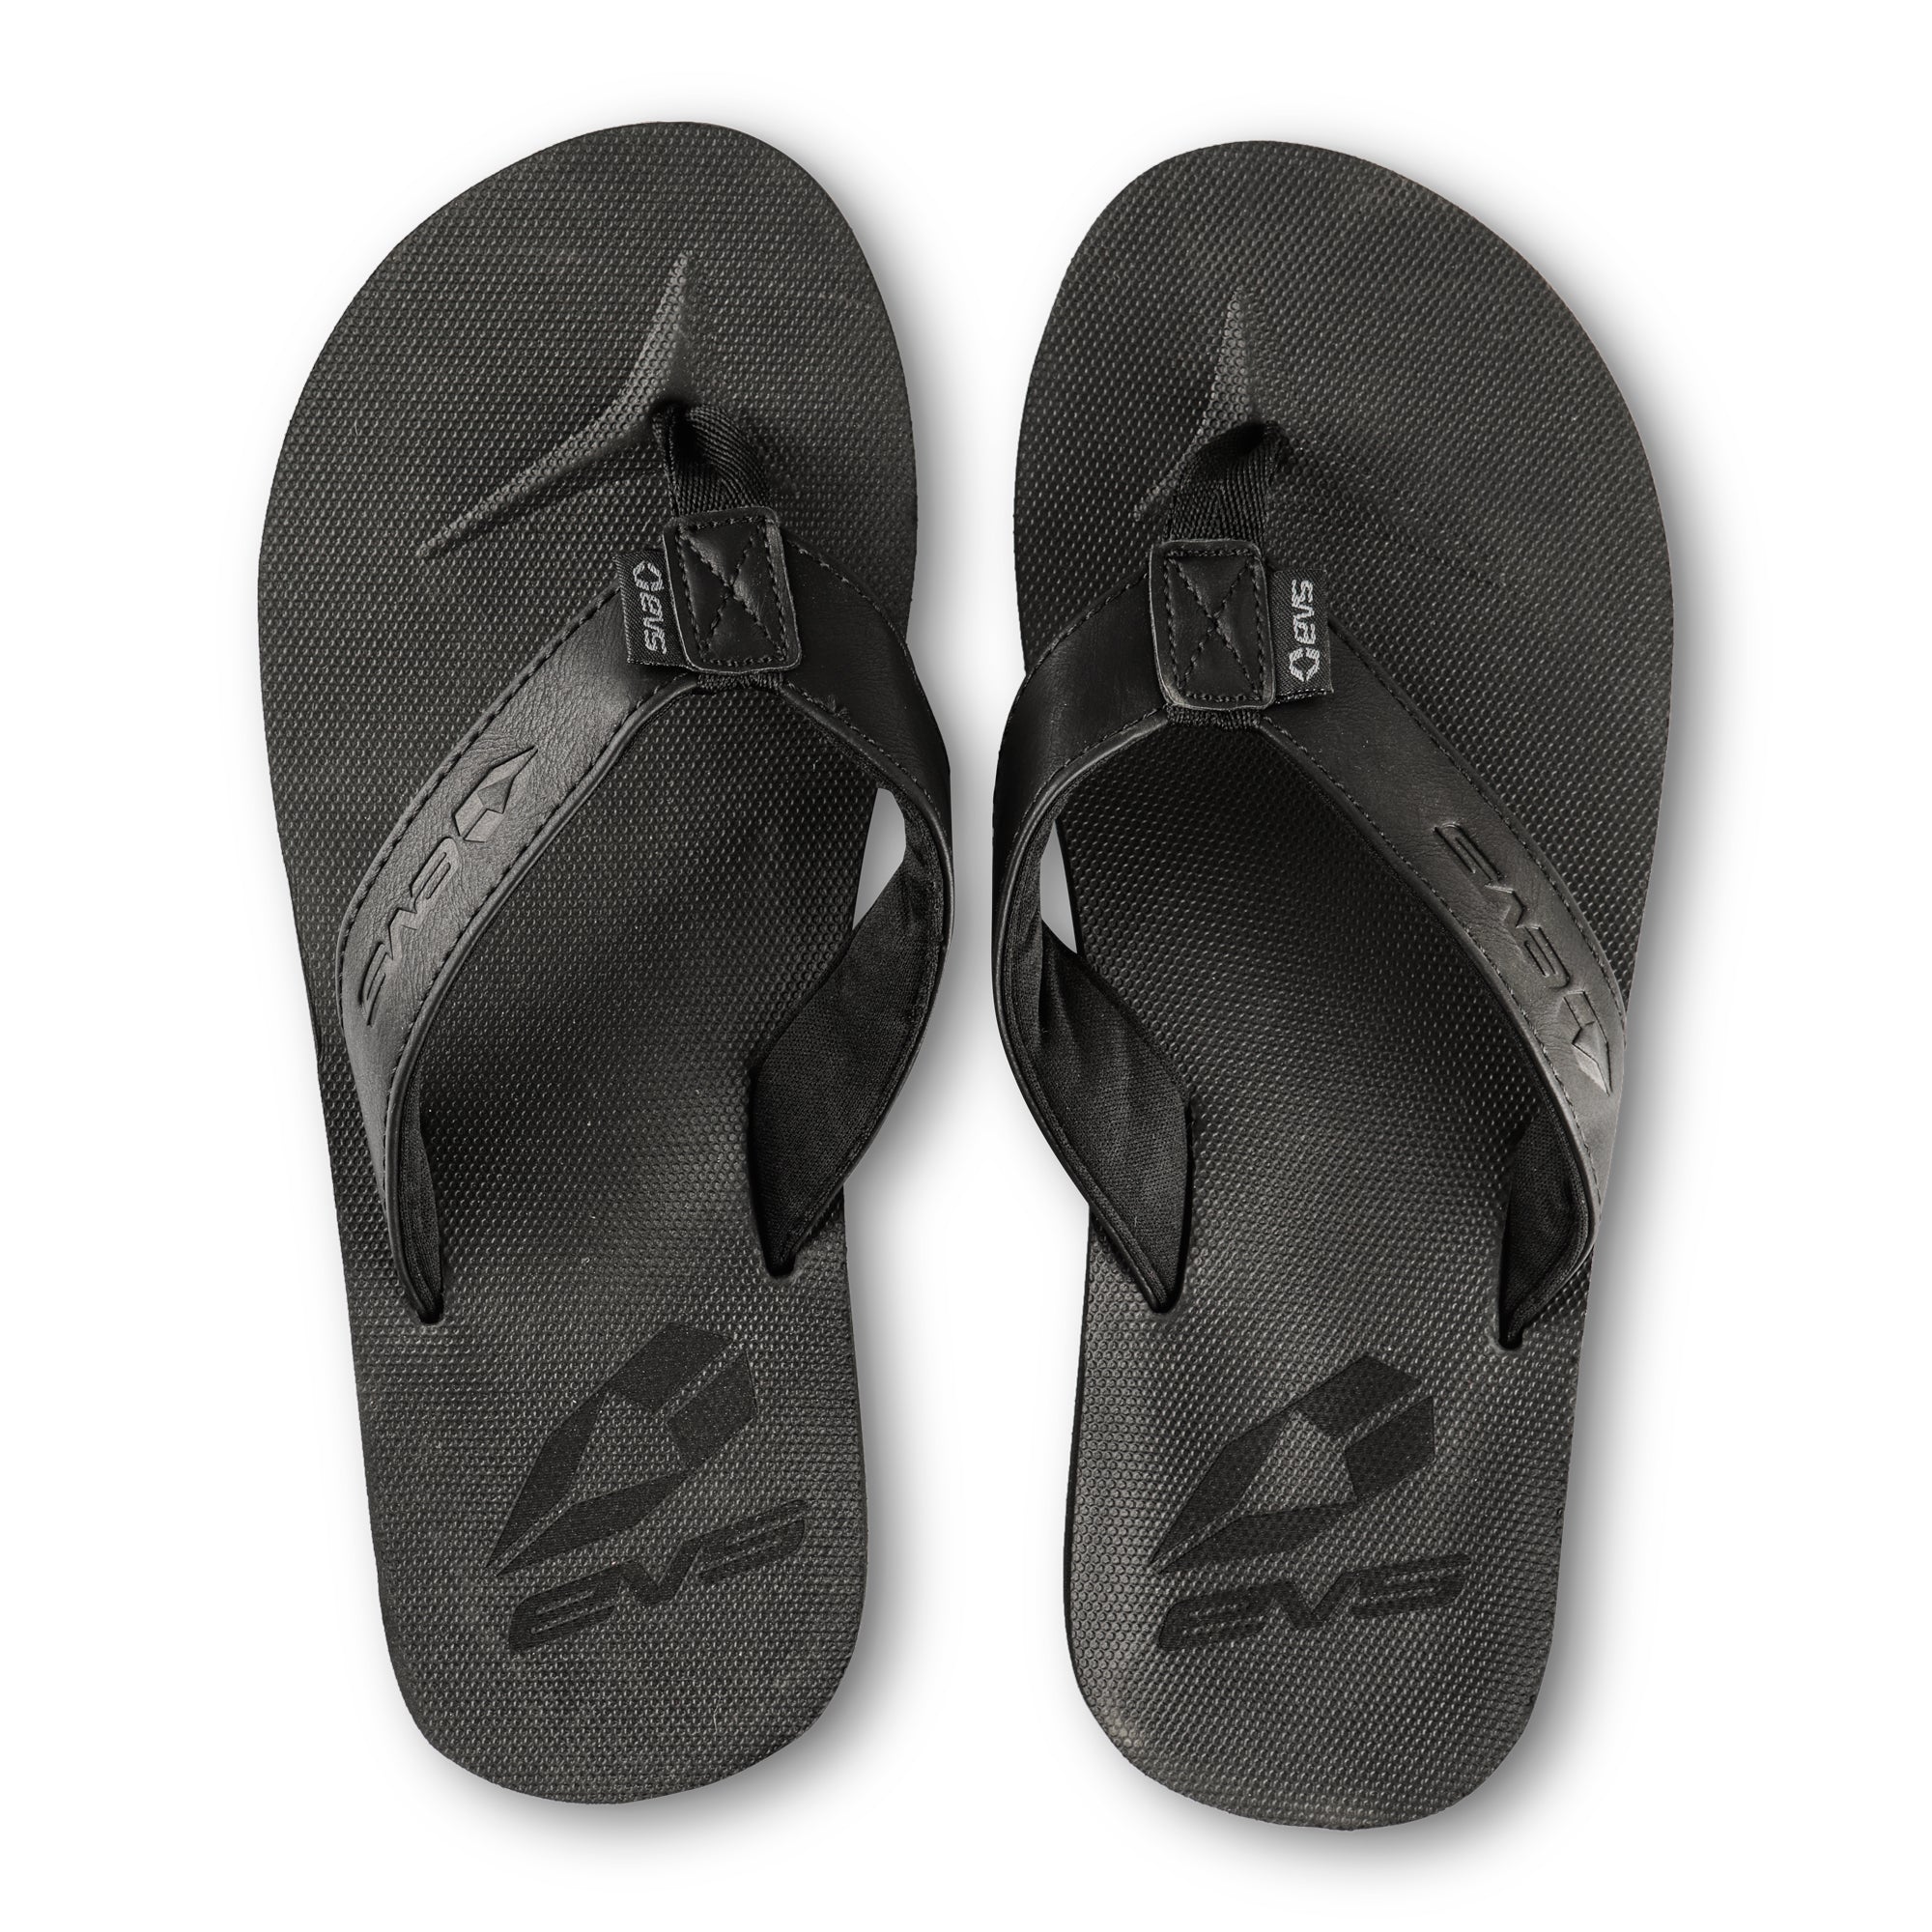 fitflop women's glitzie slide sandal